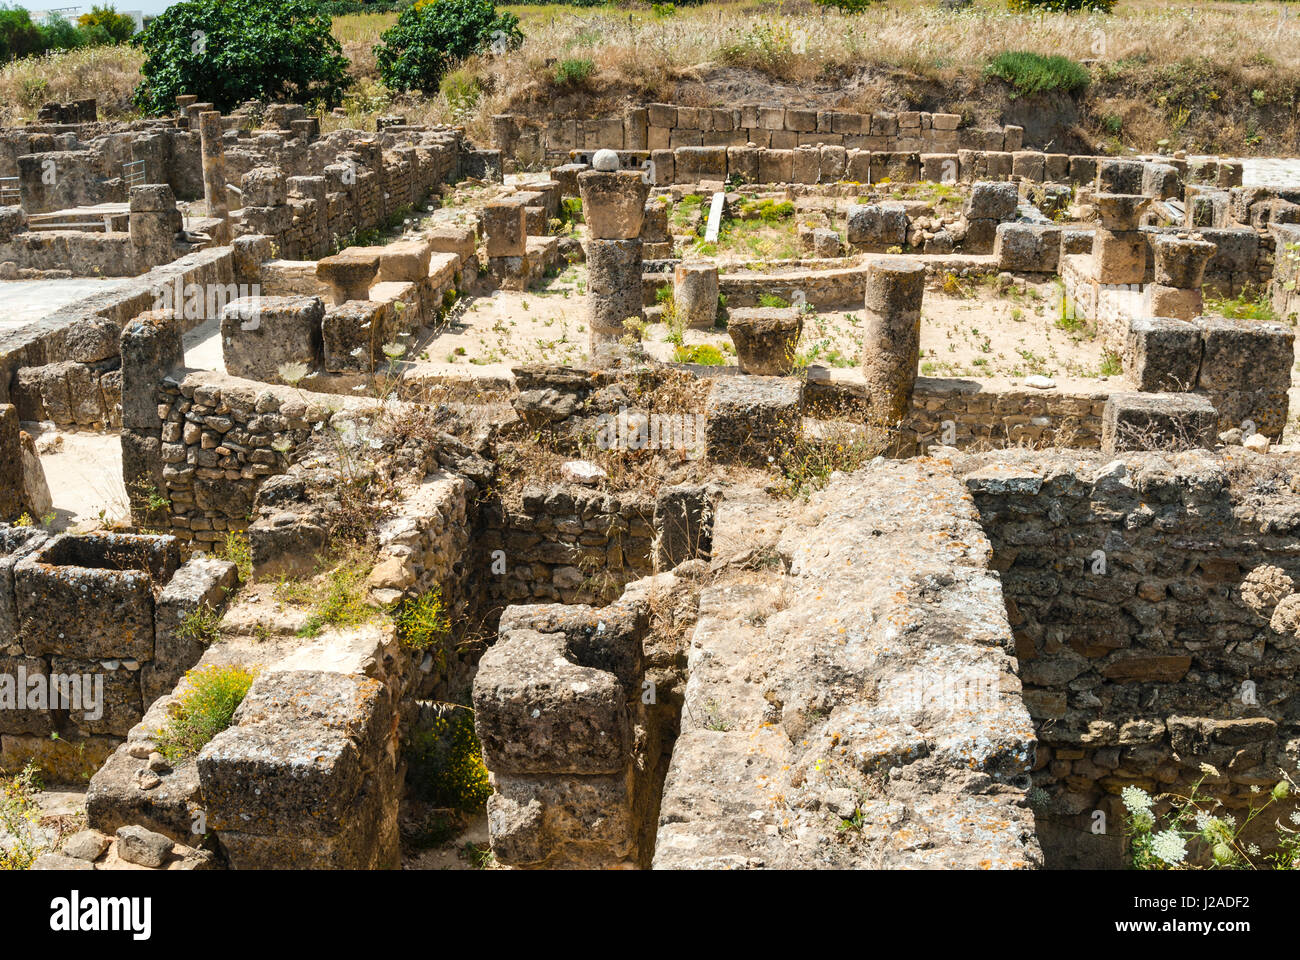 Utica punischen und römischen archäologischen Stätte, Tunesien, Nordafrika Stockfoto